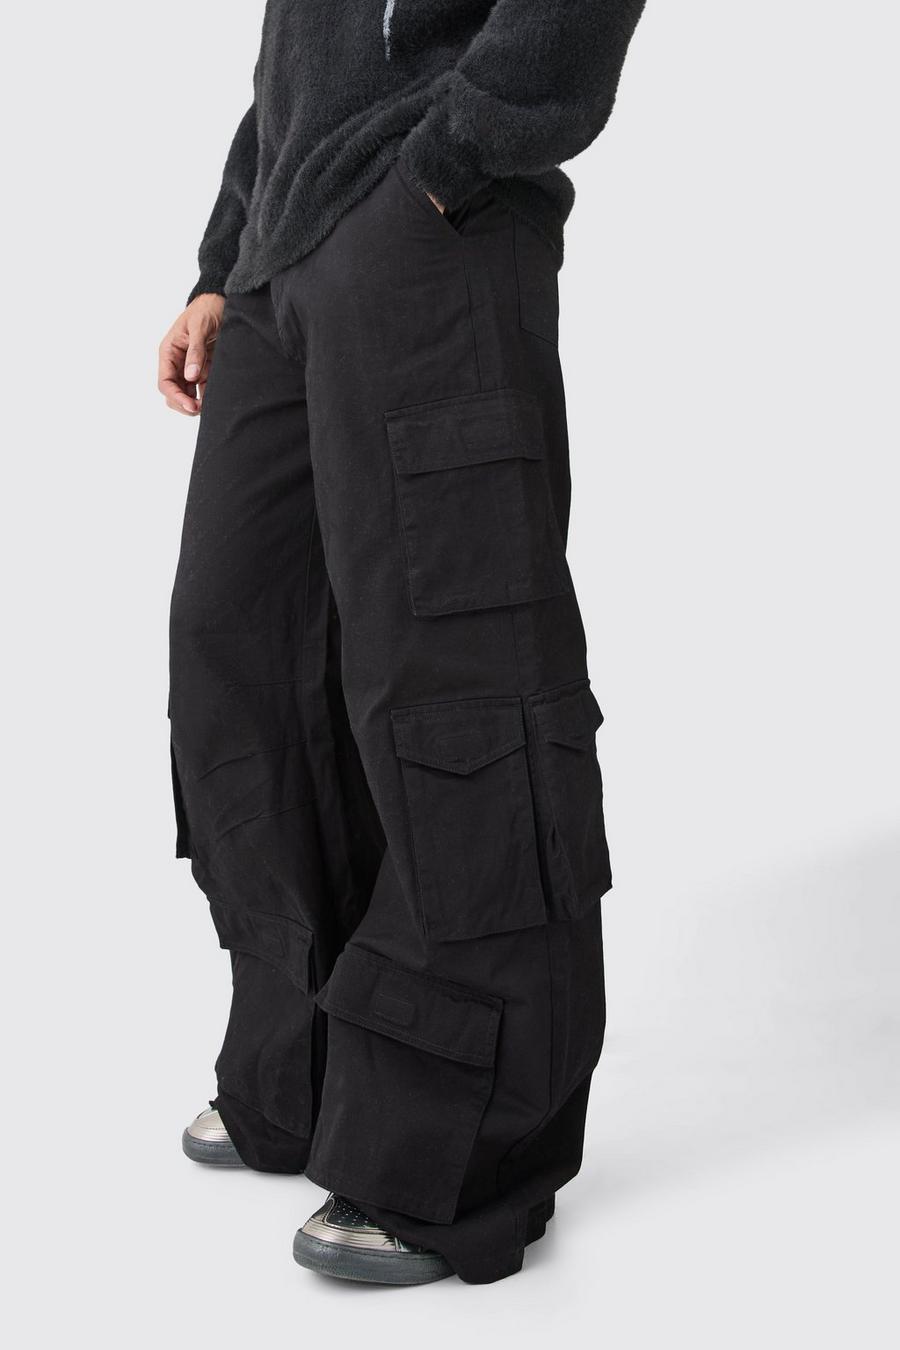 Pantalon cargo baggy à poches multiples, Black